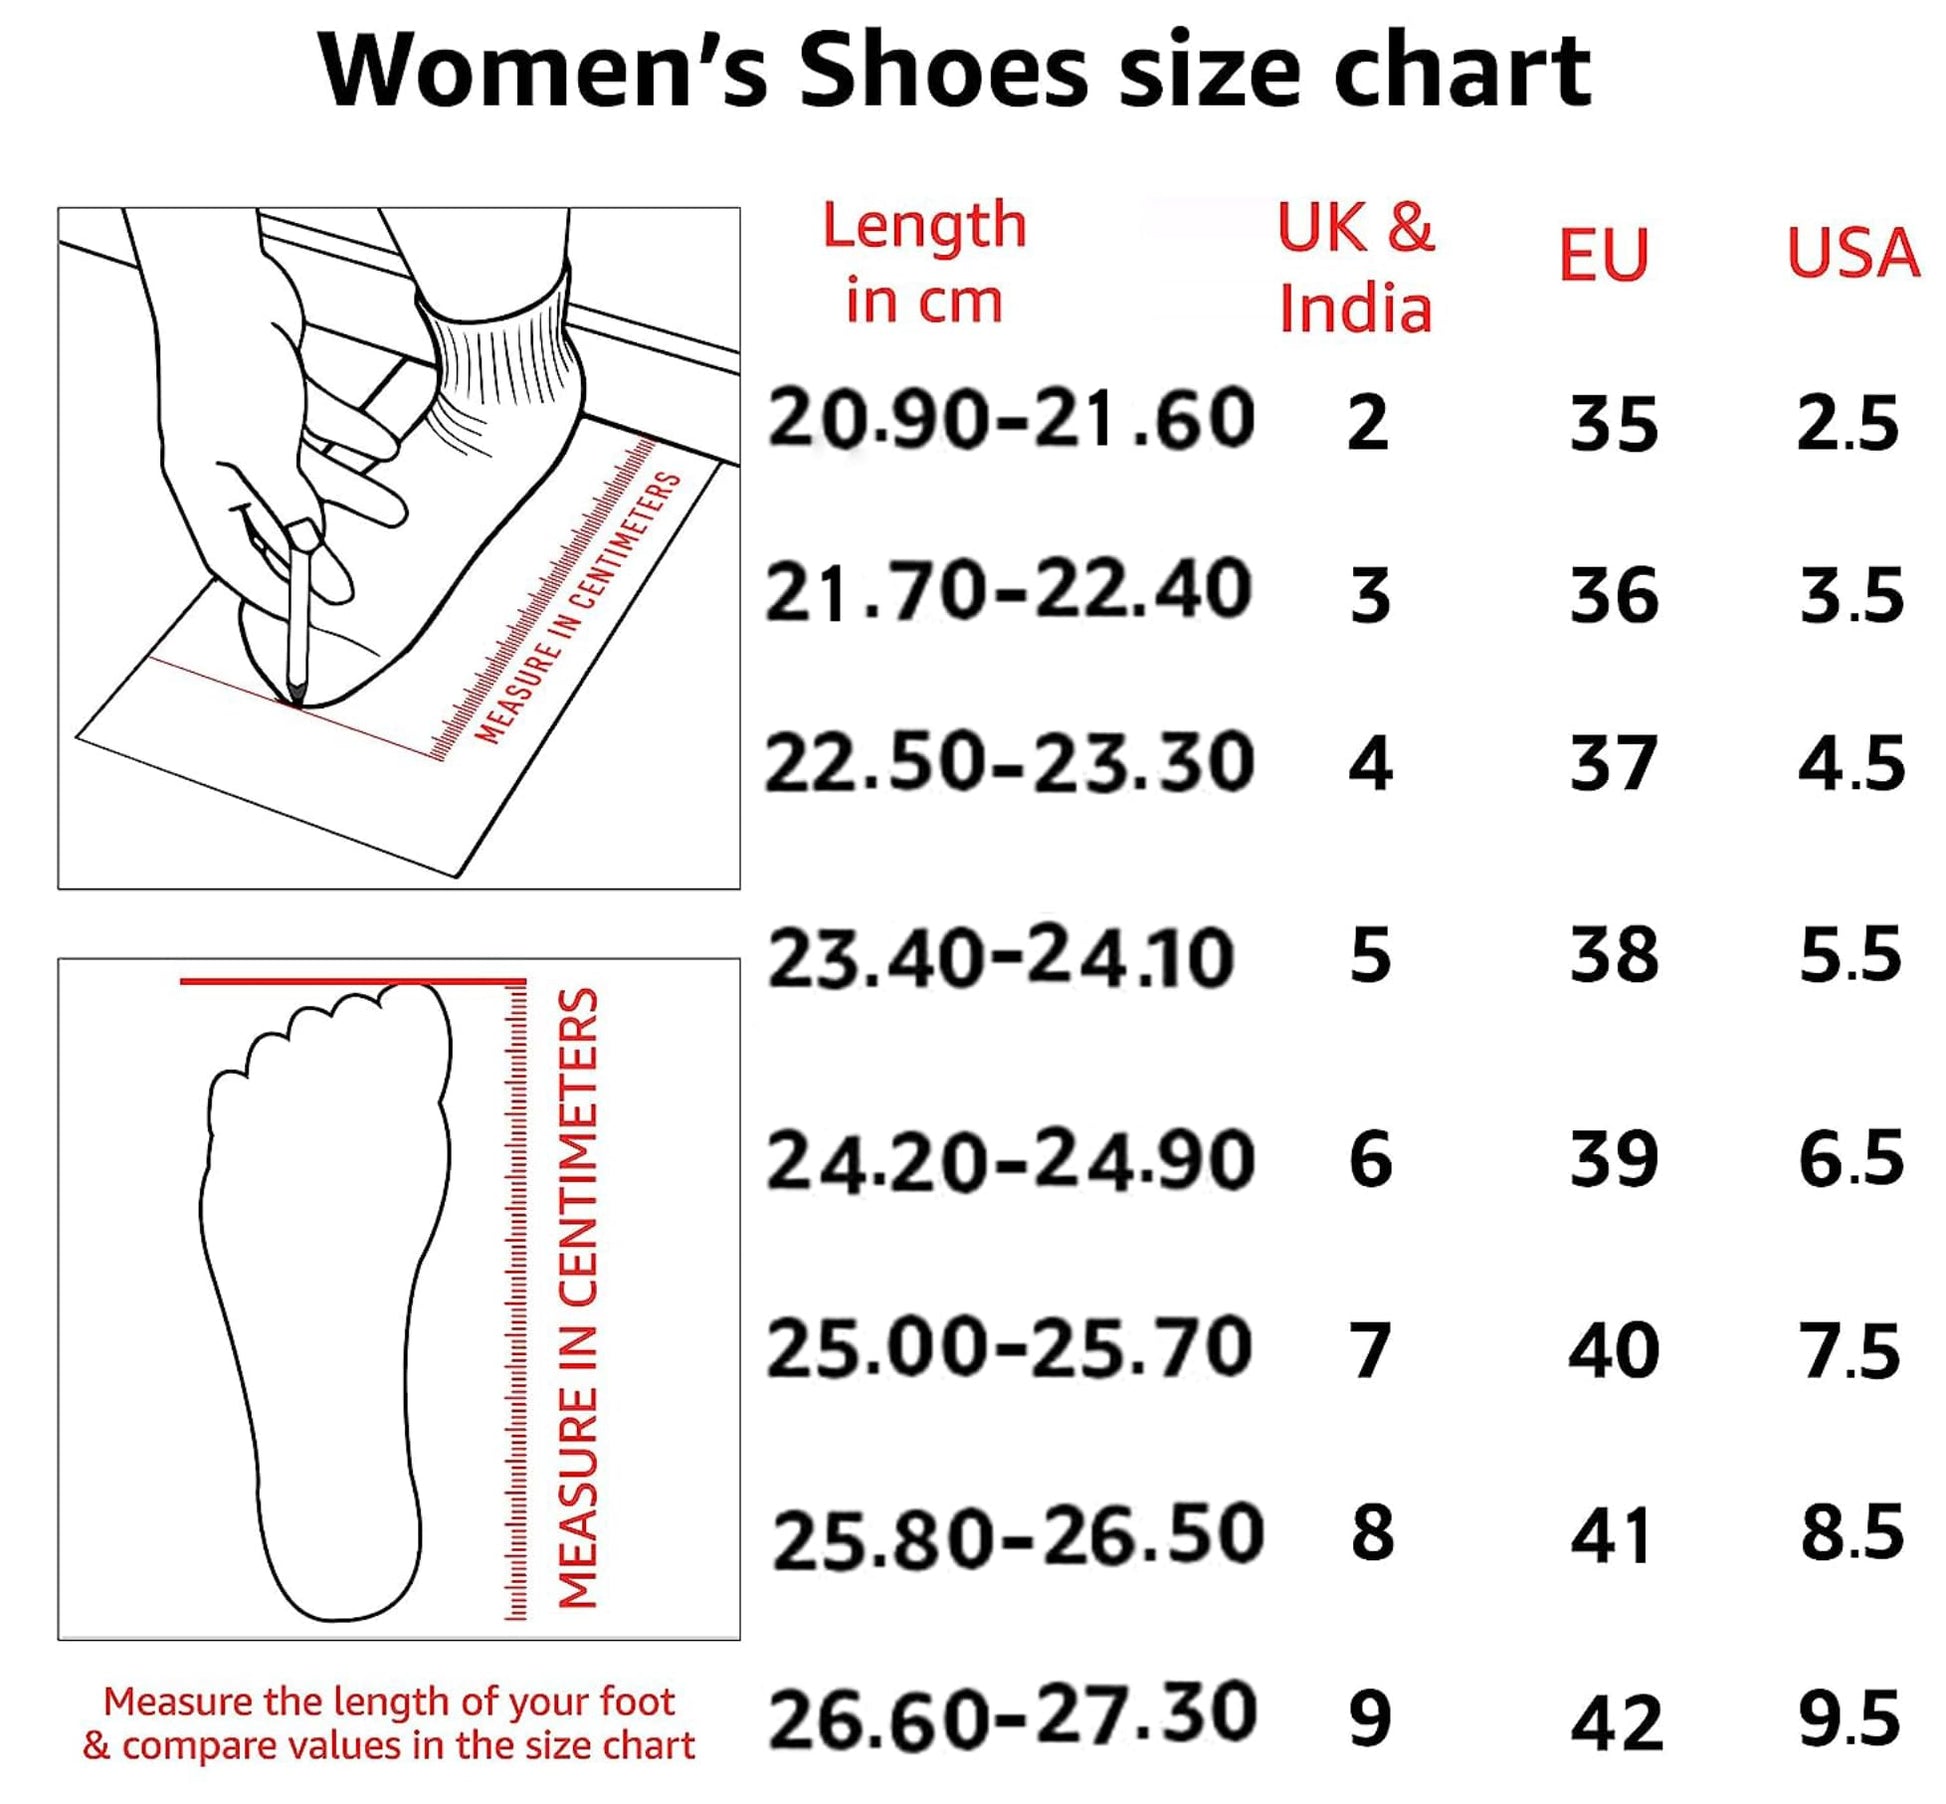 Bata Naomi E Pink Women Casual Shoes 7 UK (5595888) 